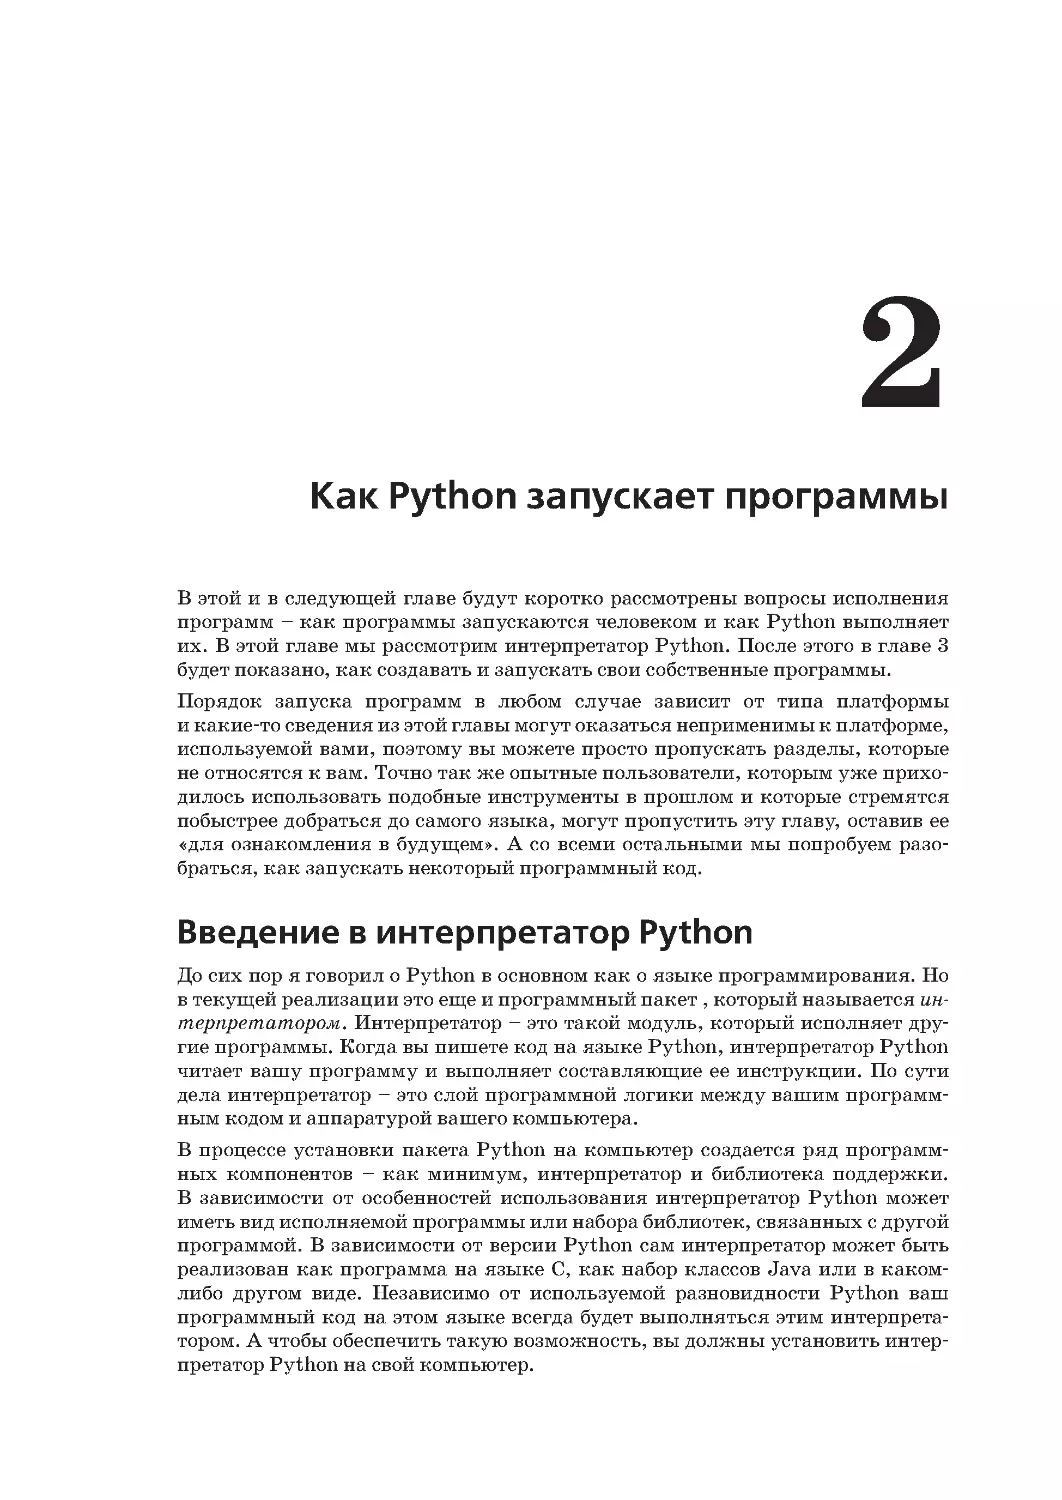 Глава 2.
Введение в интерпретатор Python